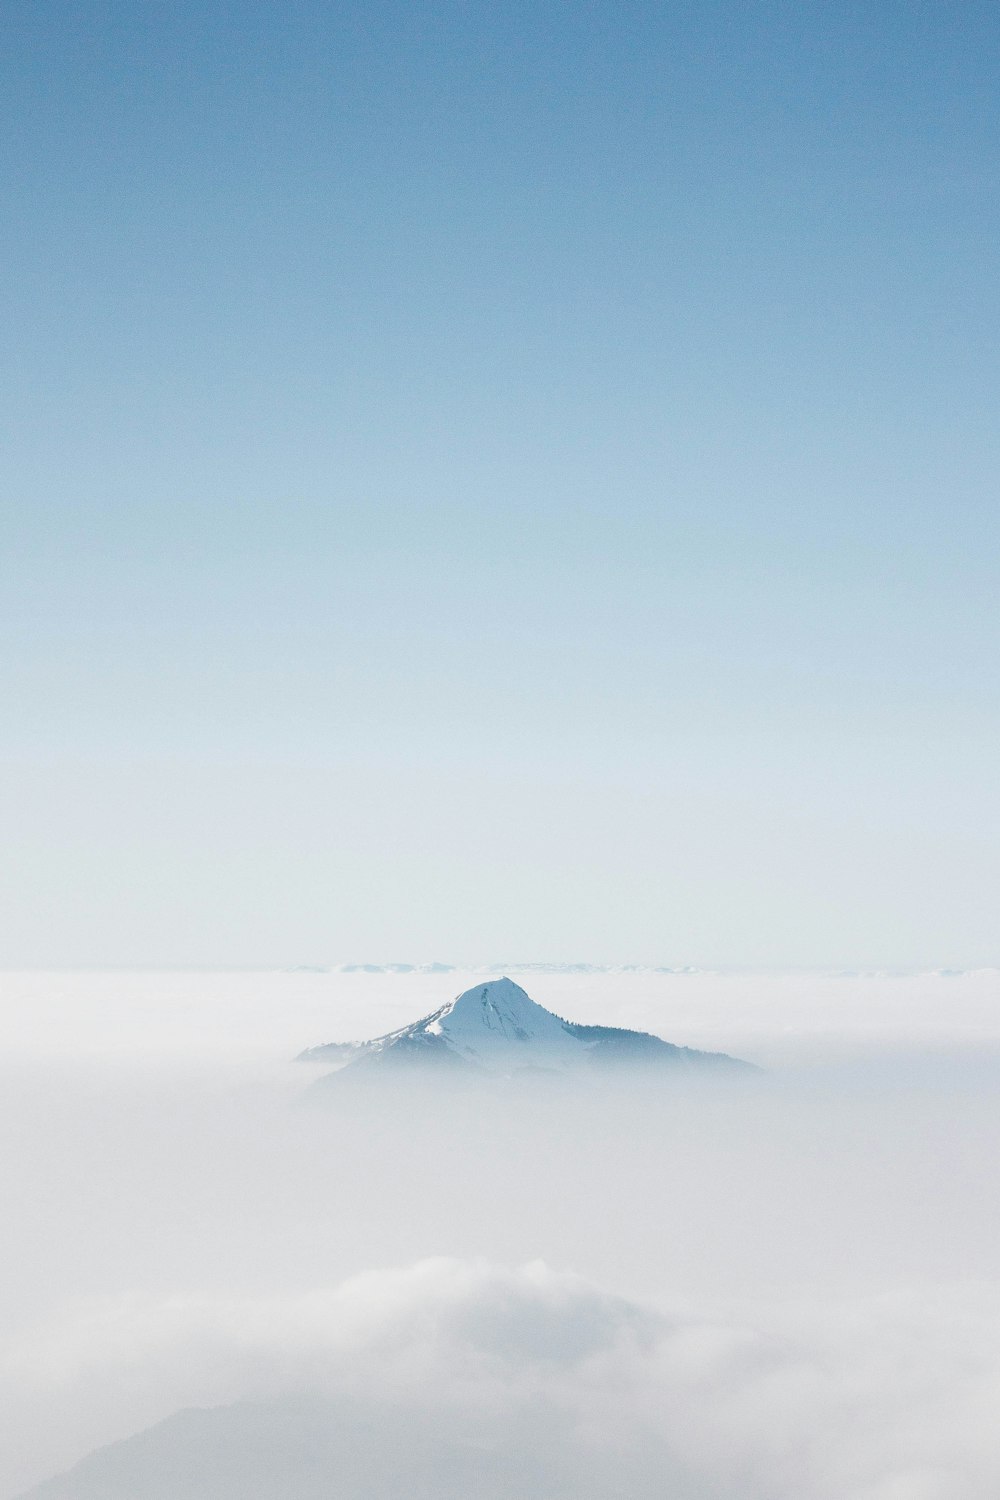 montagne enneigée sous ciel bleu pendant la journée